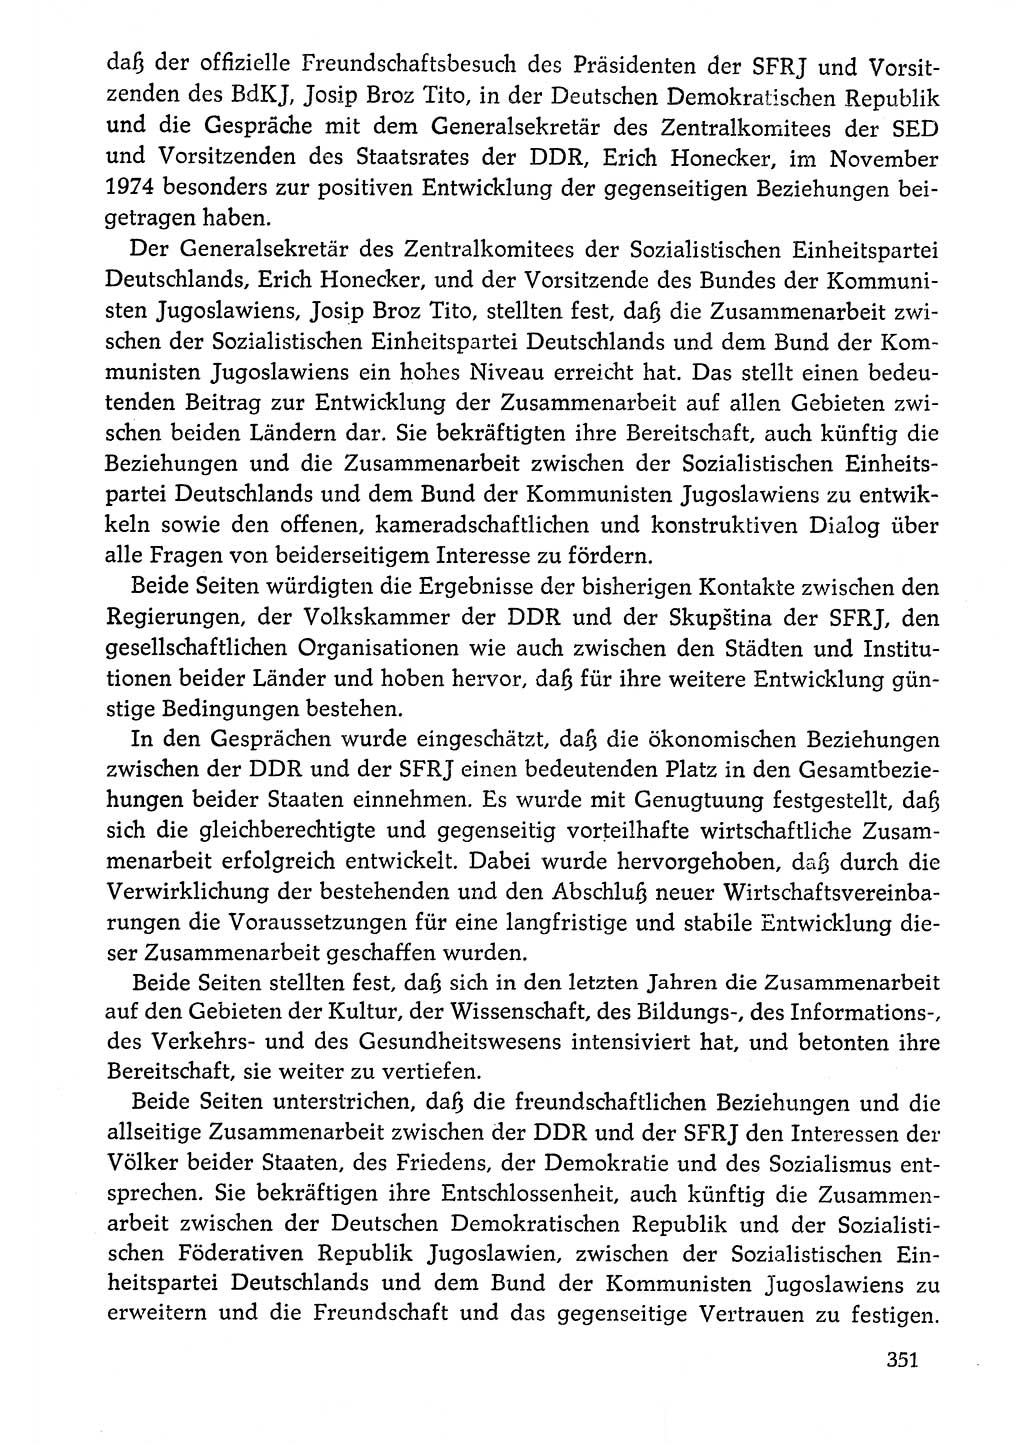 Dokumente der Sozialistischen Einheitspartei Deutschlands (SED) [Deutsche Demokratische Republik (DDR)] 1976-1977, Seite 351 (Dok. SED DDR 1976-1977, S. 351)